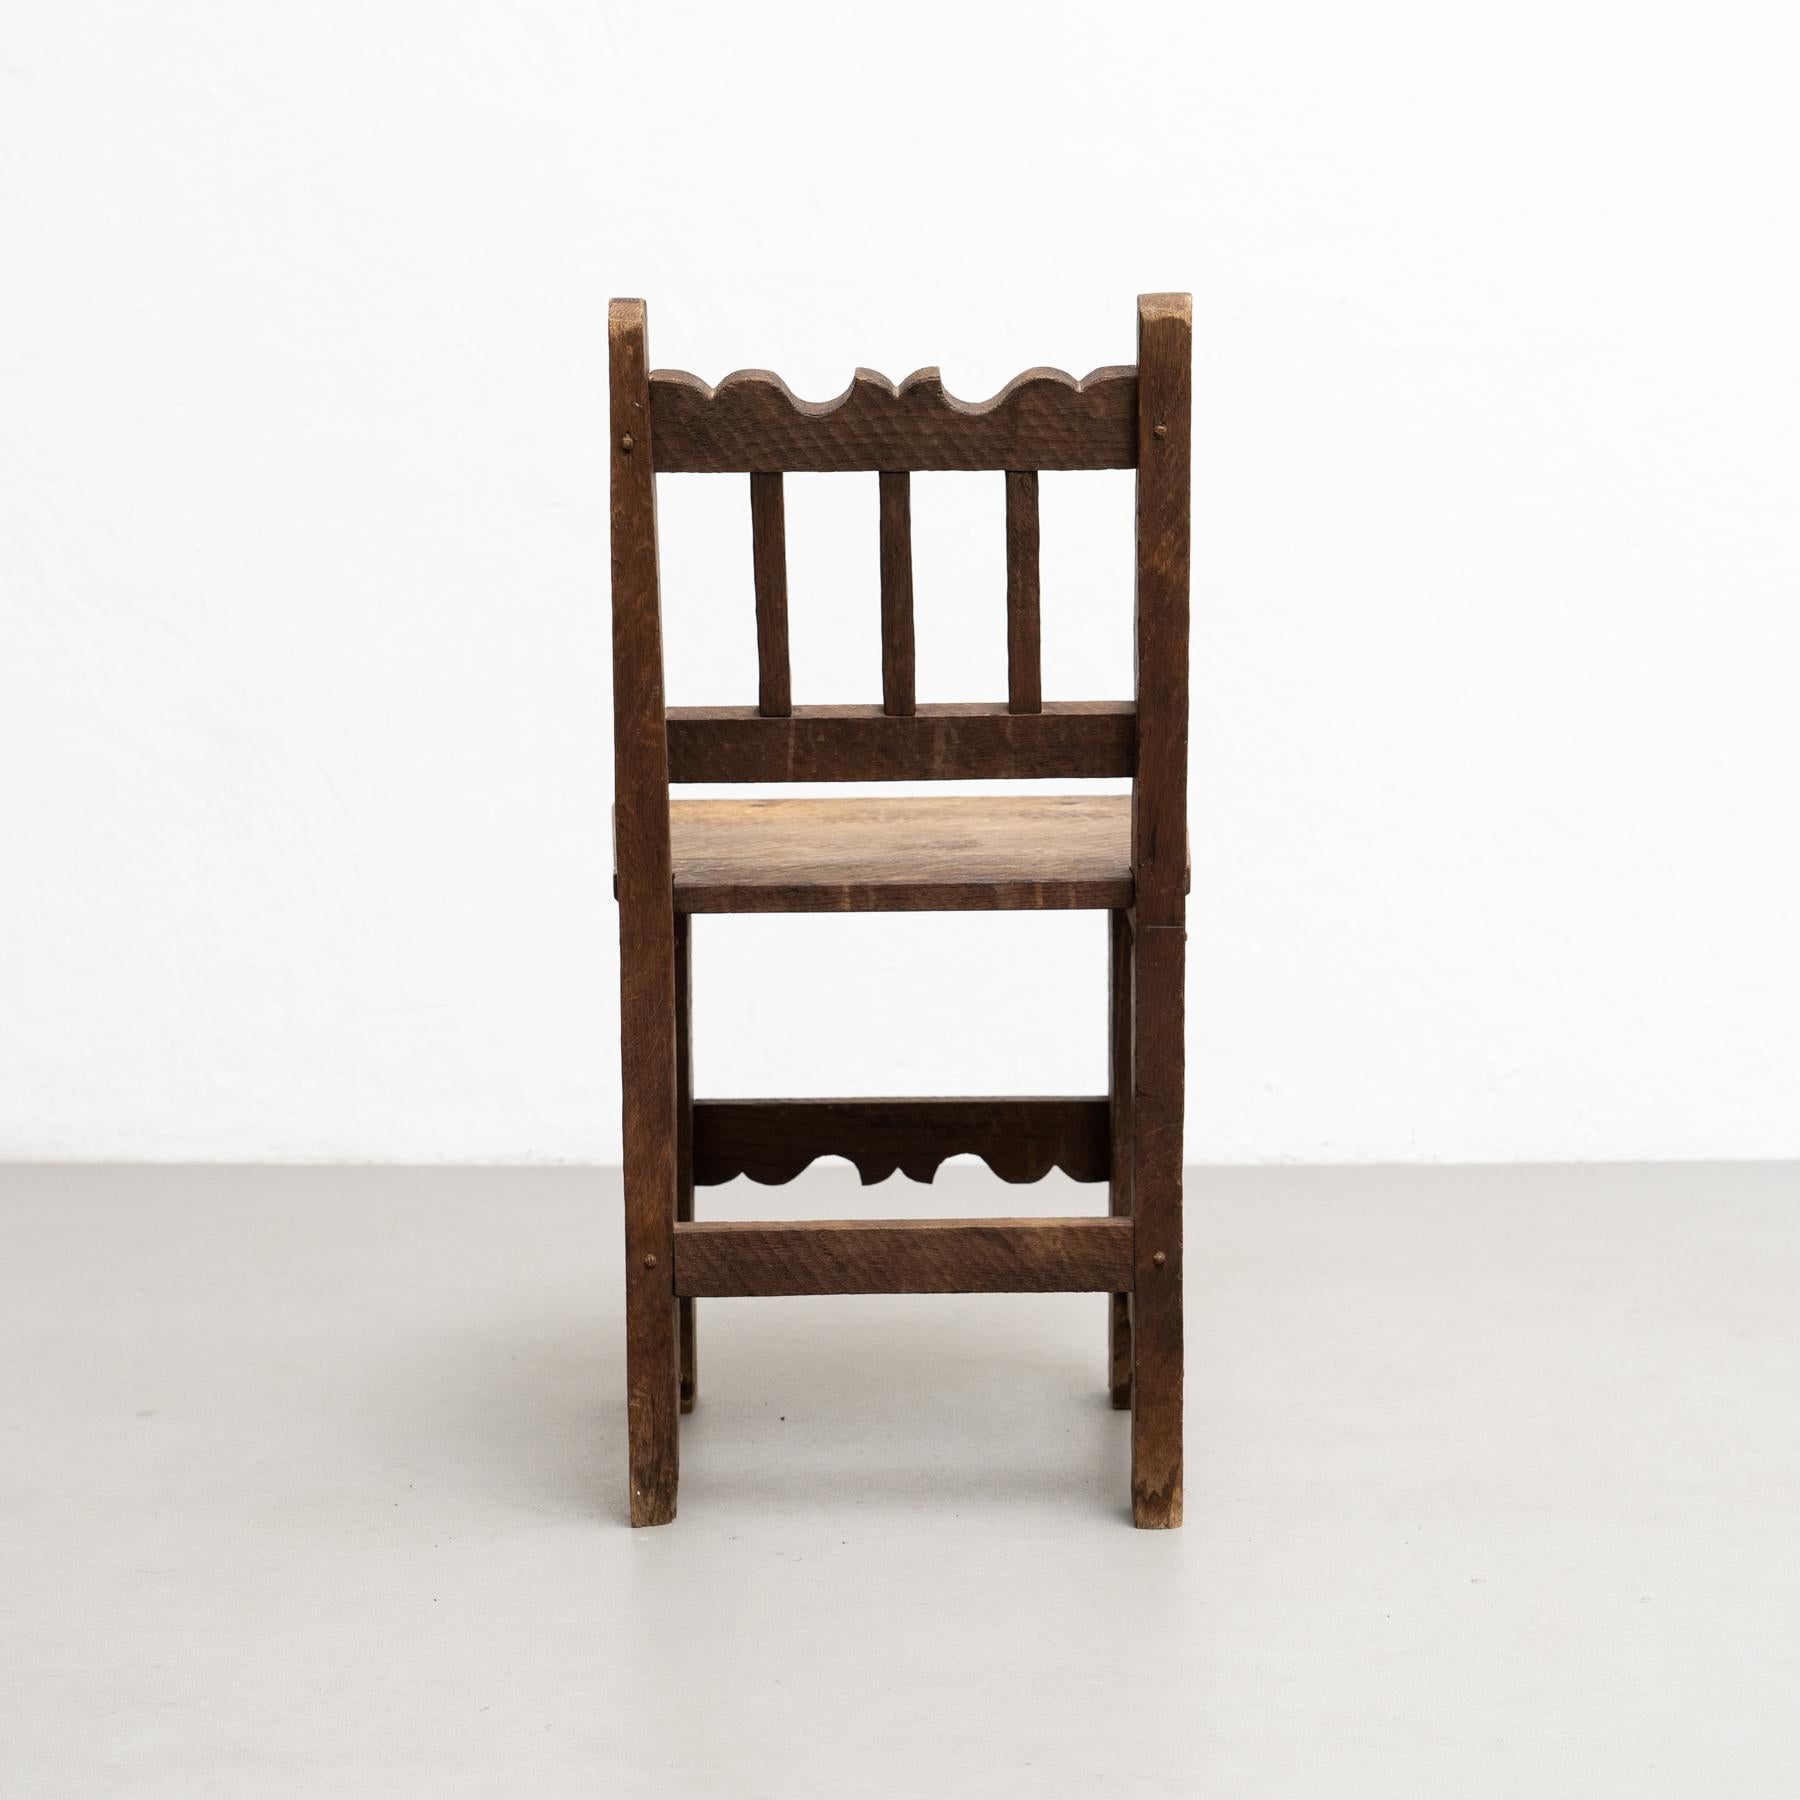 Conjunto de cuatro sillas de madera racionalistas modernas de mediados de siglo, encanto rústico, hacia 1940 1